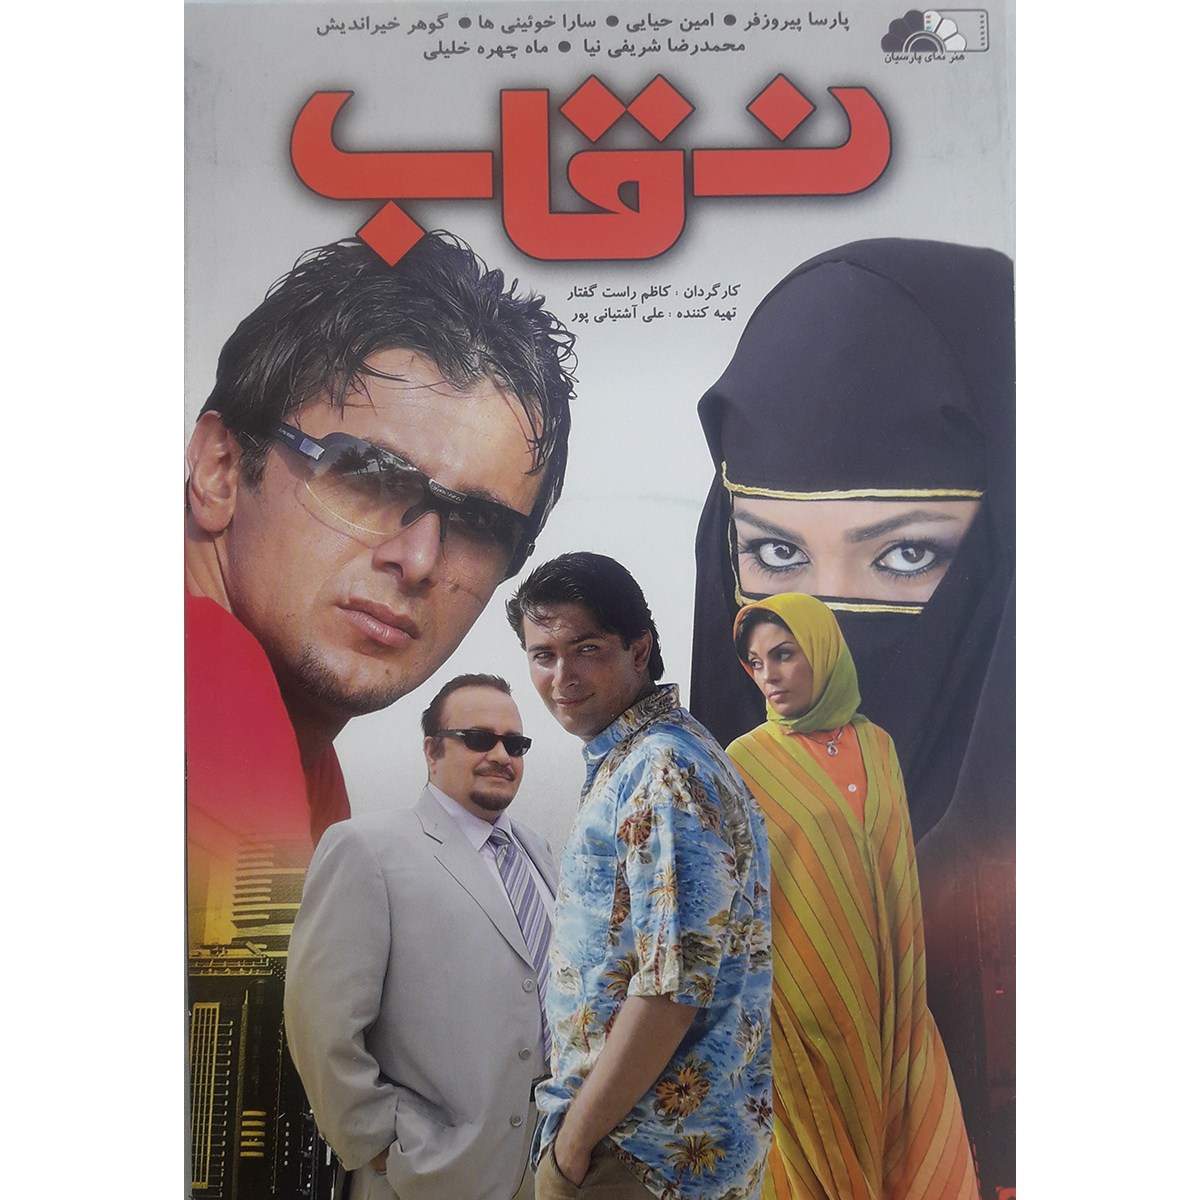 فیلم سینمایی نقاب اثر کاظم راست گفتار نشر هنرنمای پارسیان